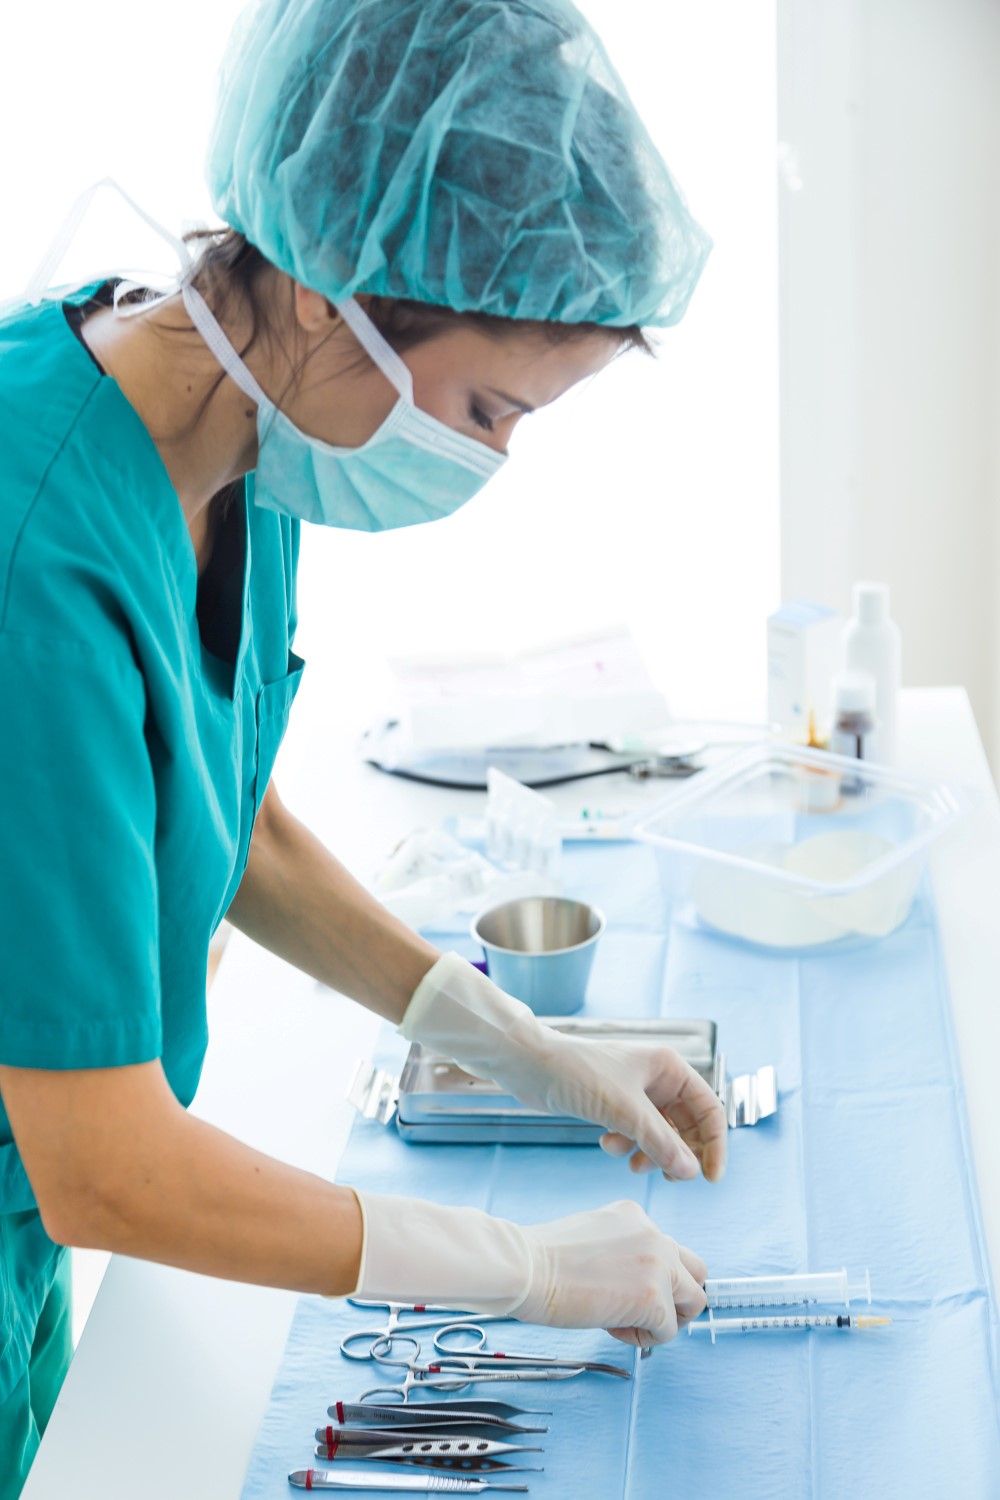 جراحی عمومی: تخصص و ایمنی با تجهیزات پزشکی متمایز